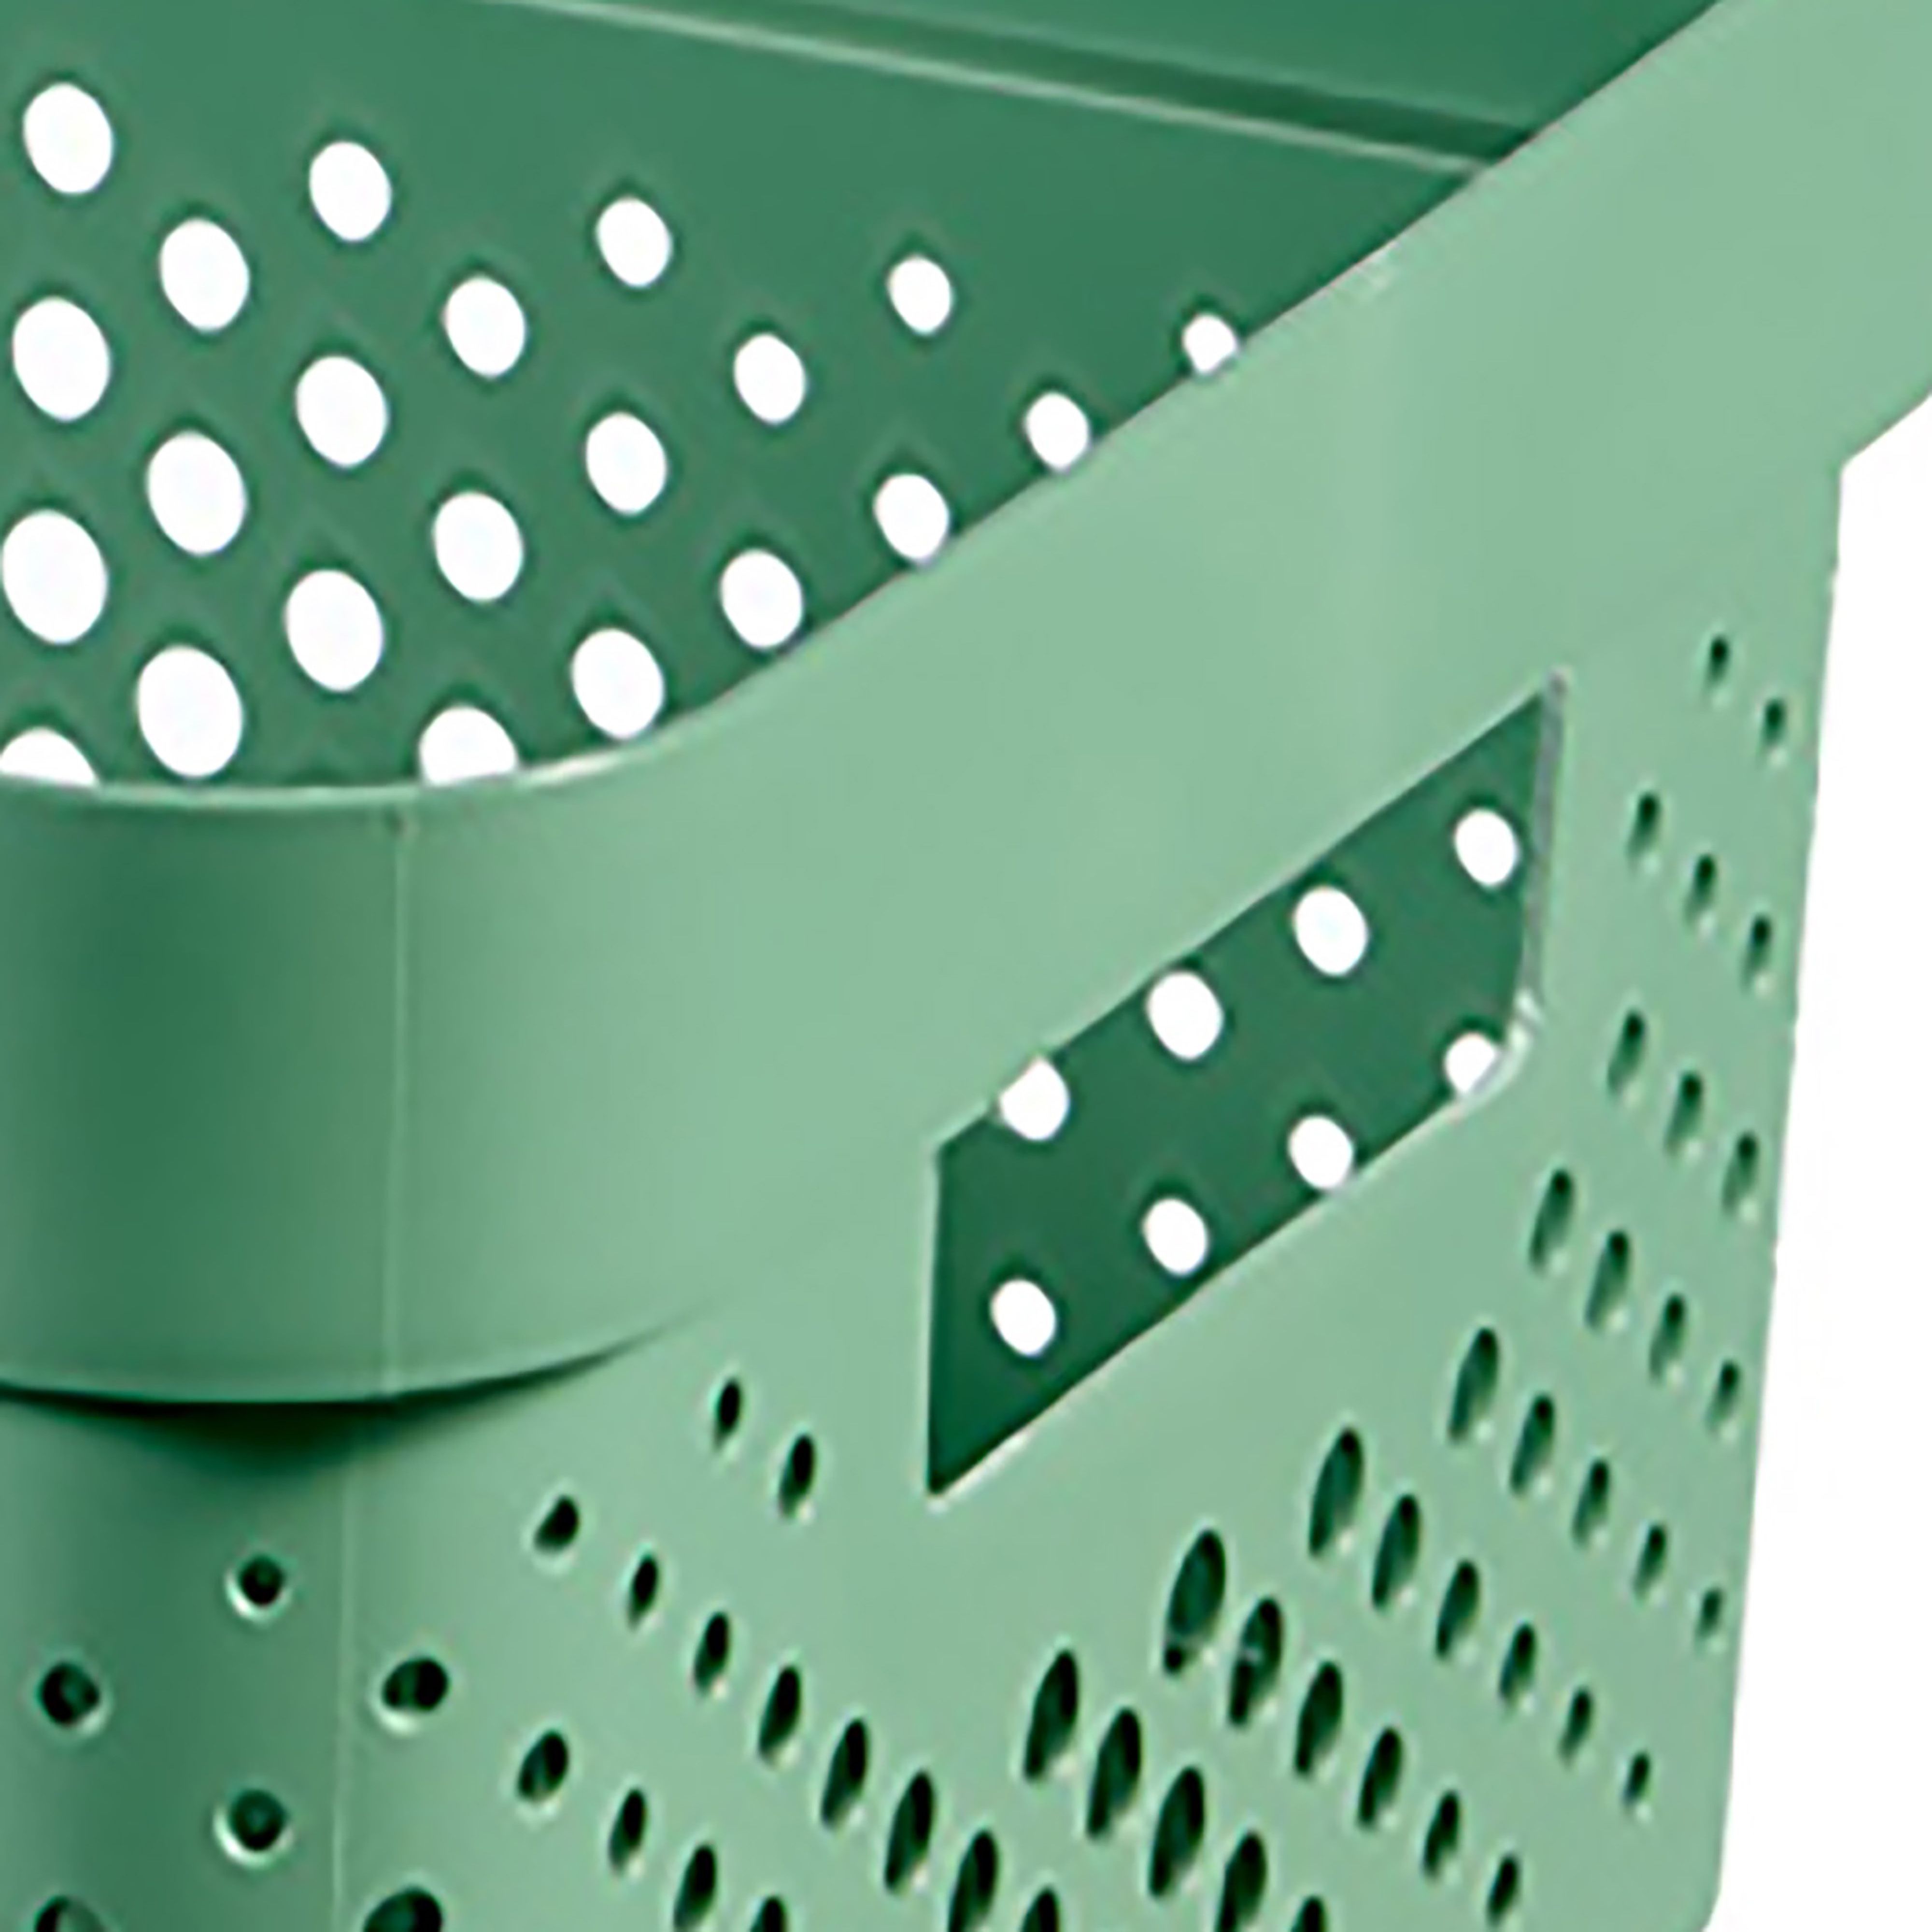 Curver Infinity Dots Green Plastic Stackable Storage basket (H)14cm (W)27cm (D)36cm